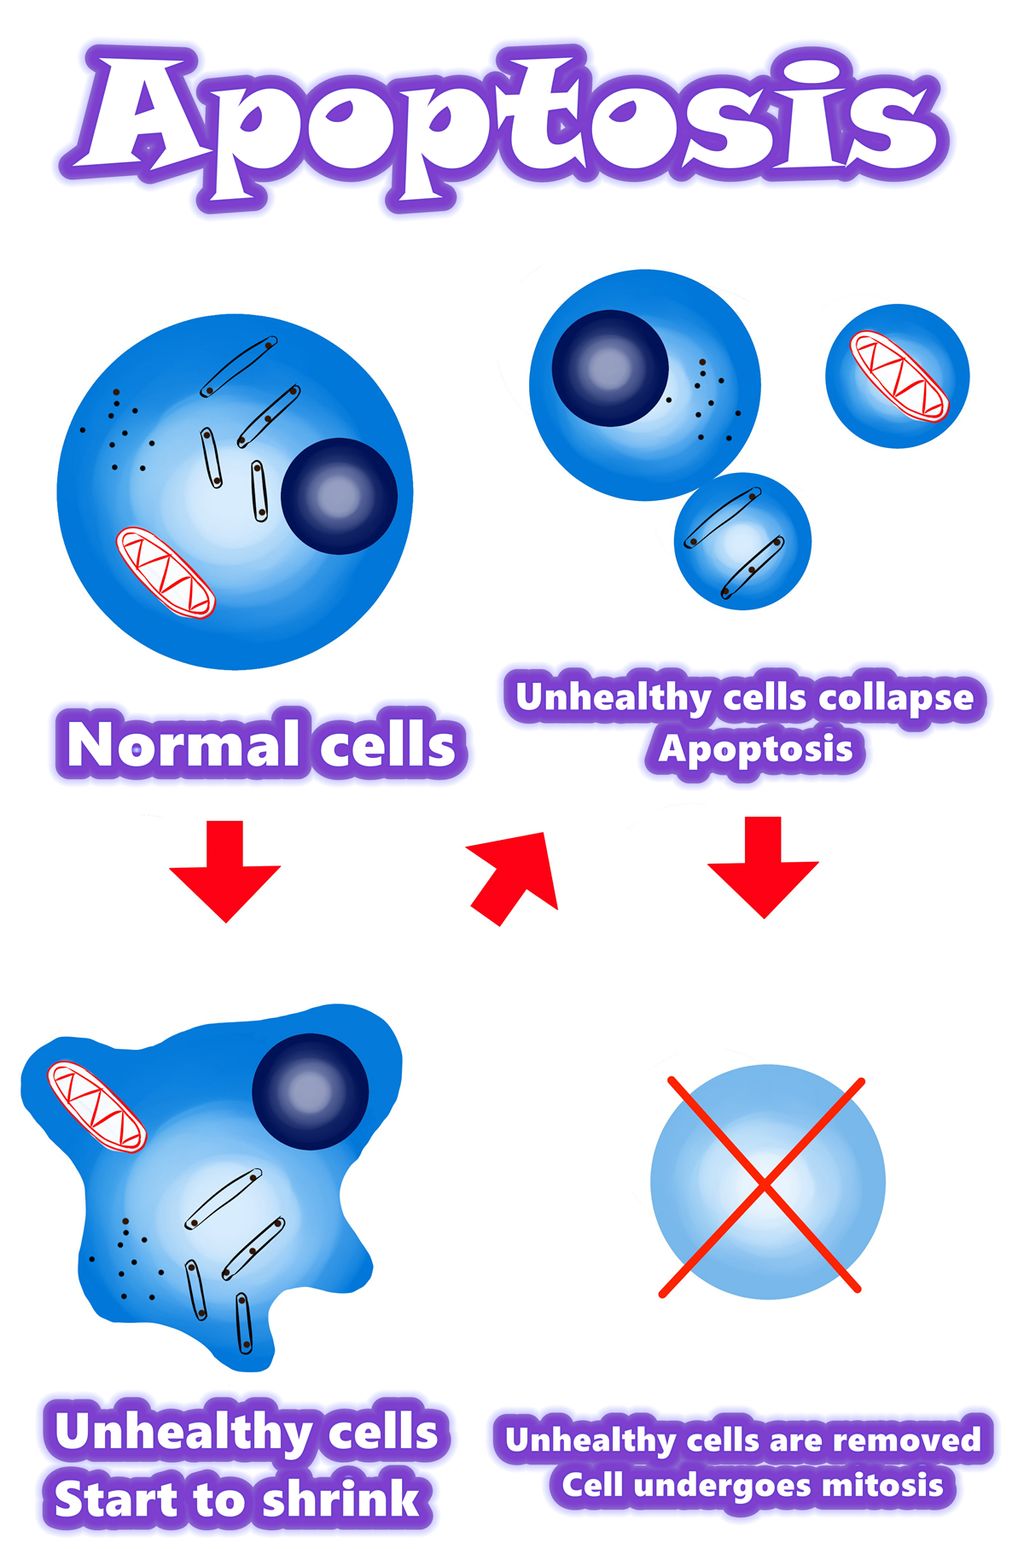 Solamargine | Giải pháp tốt nhất cho tế bào ung thư năm 2021 | Apoptosis vs Tế bào ung thư | Apoptosis vs Tế bào bất thường | Apoptosis vs Tế bào đột biến | Tổng quan / Tóm tắt / Cơ chế của quá trình apoptosis